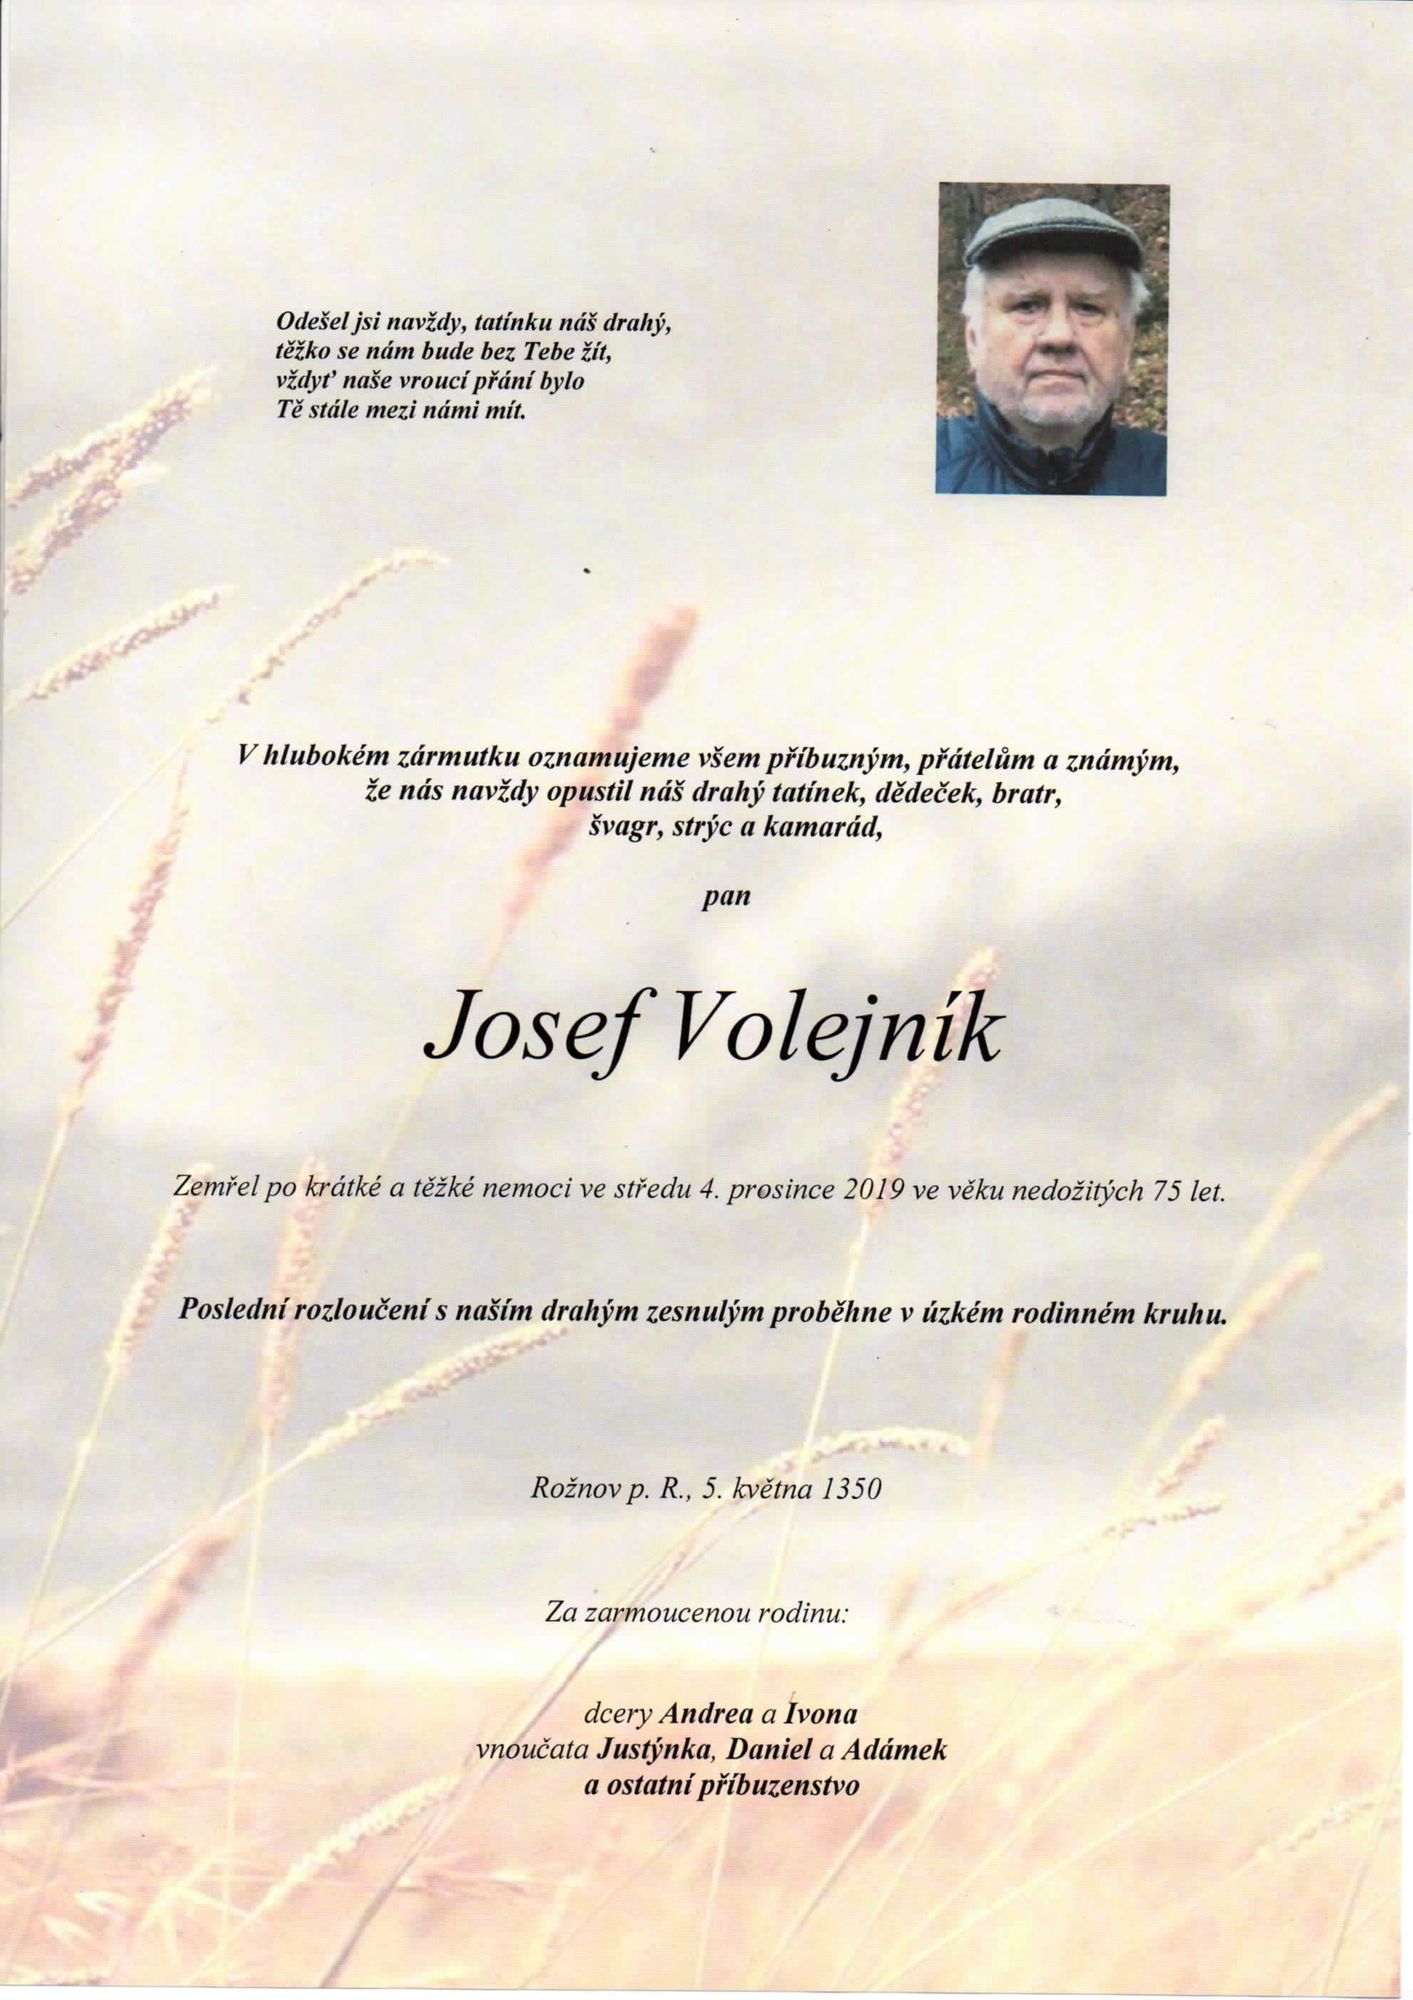 Josef Volejník